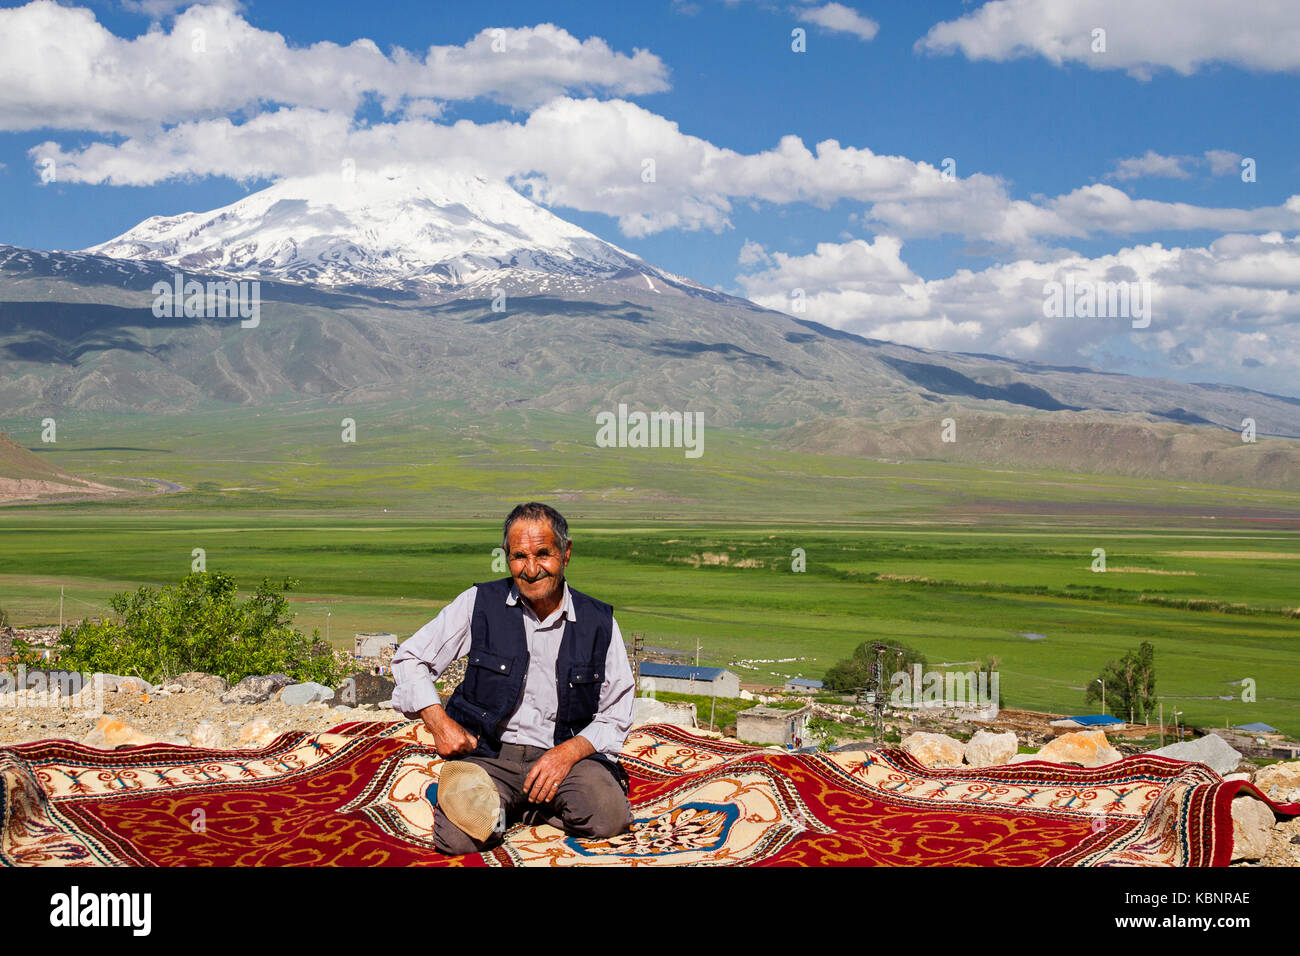 Kurde homme assis sur un tapis, avec le Mont Ararat en arrière-plan, à Dogubeyazit, en Turquie. Banque D'Images